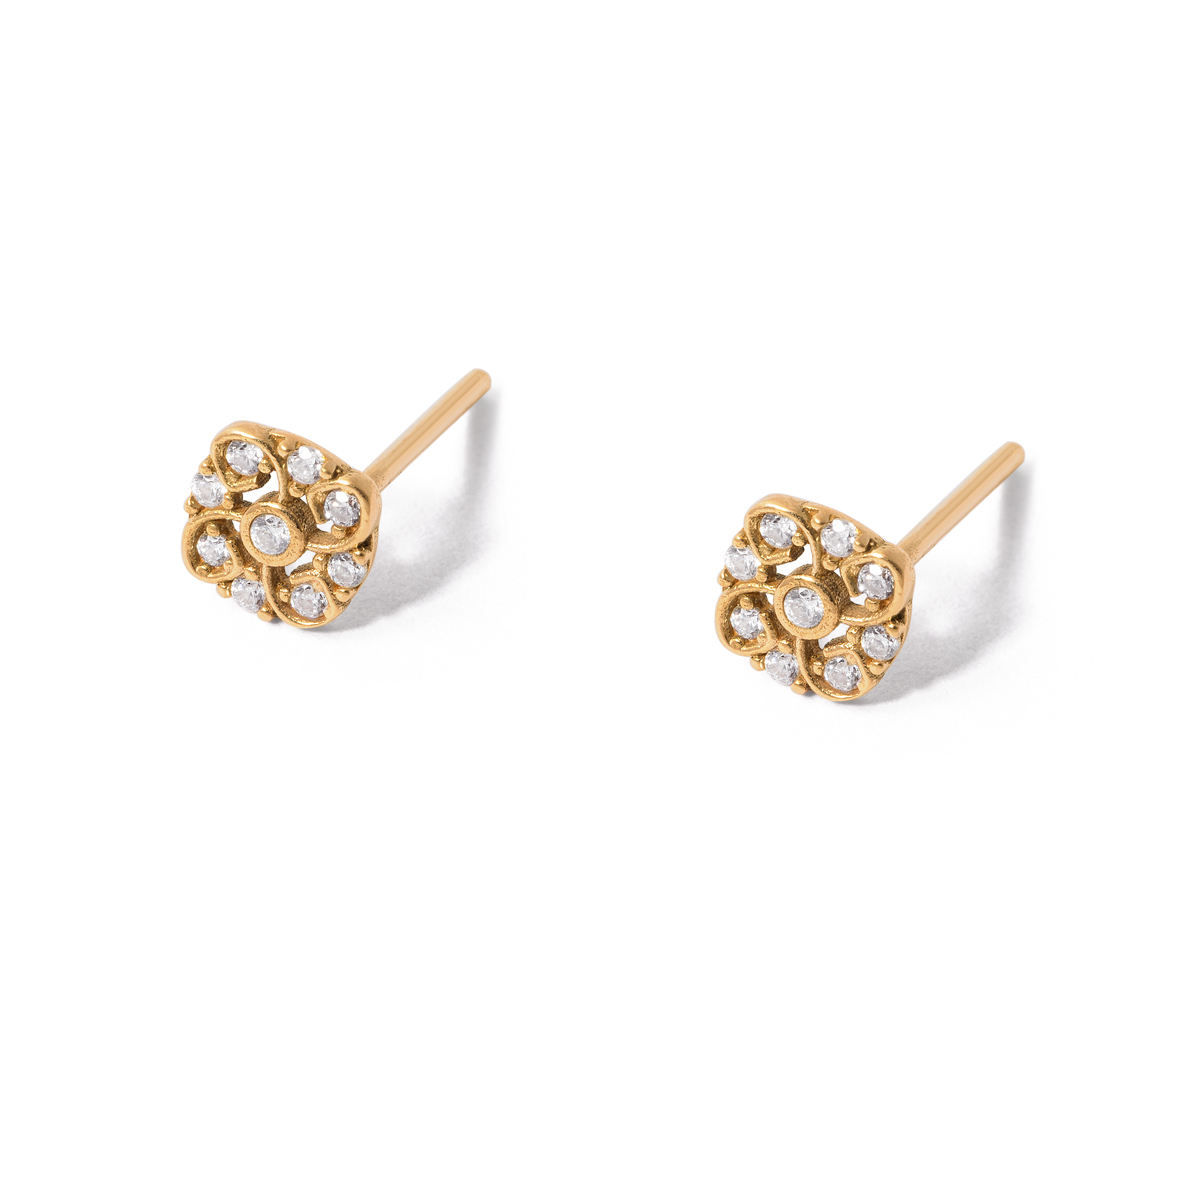 Ontra flower gold earrings g